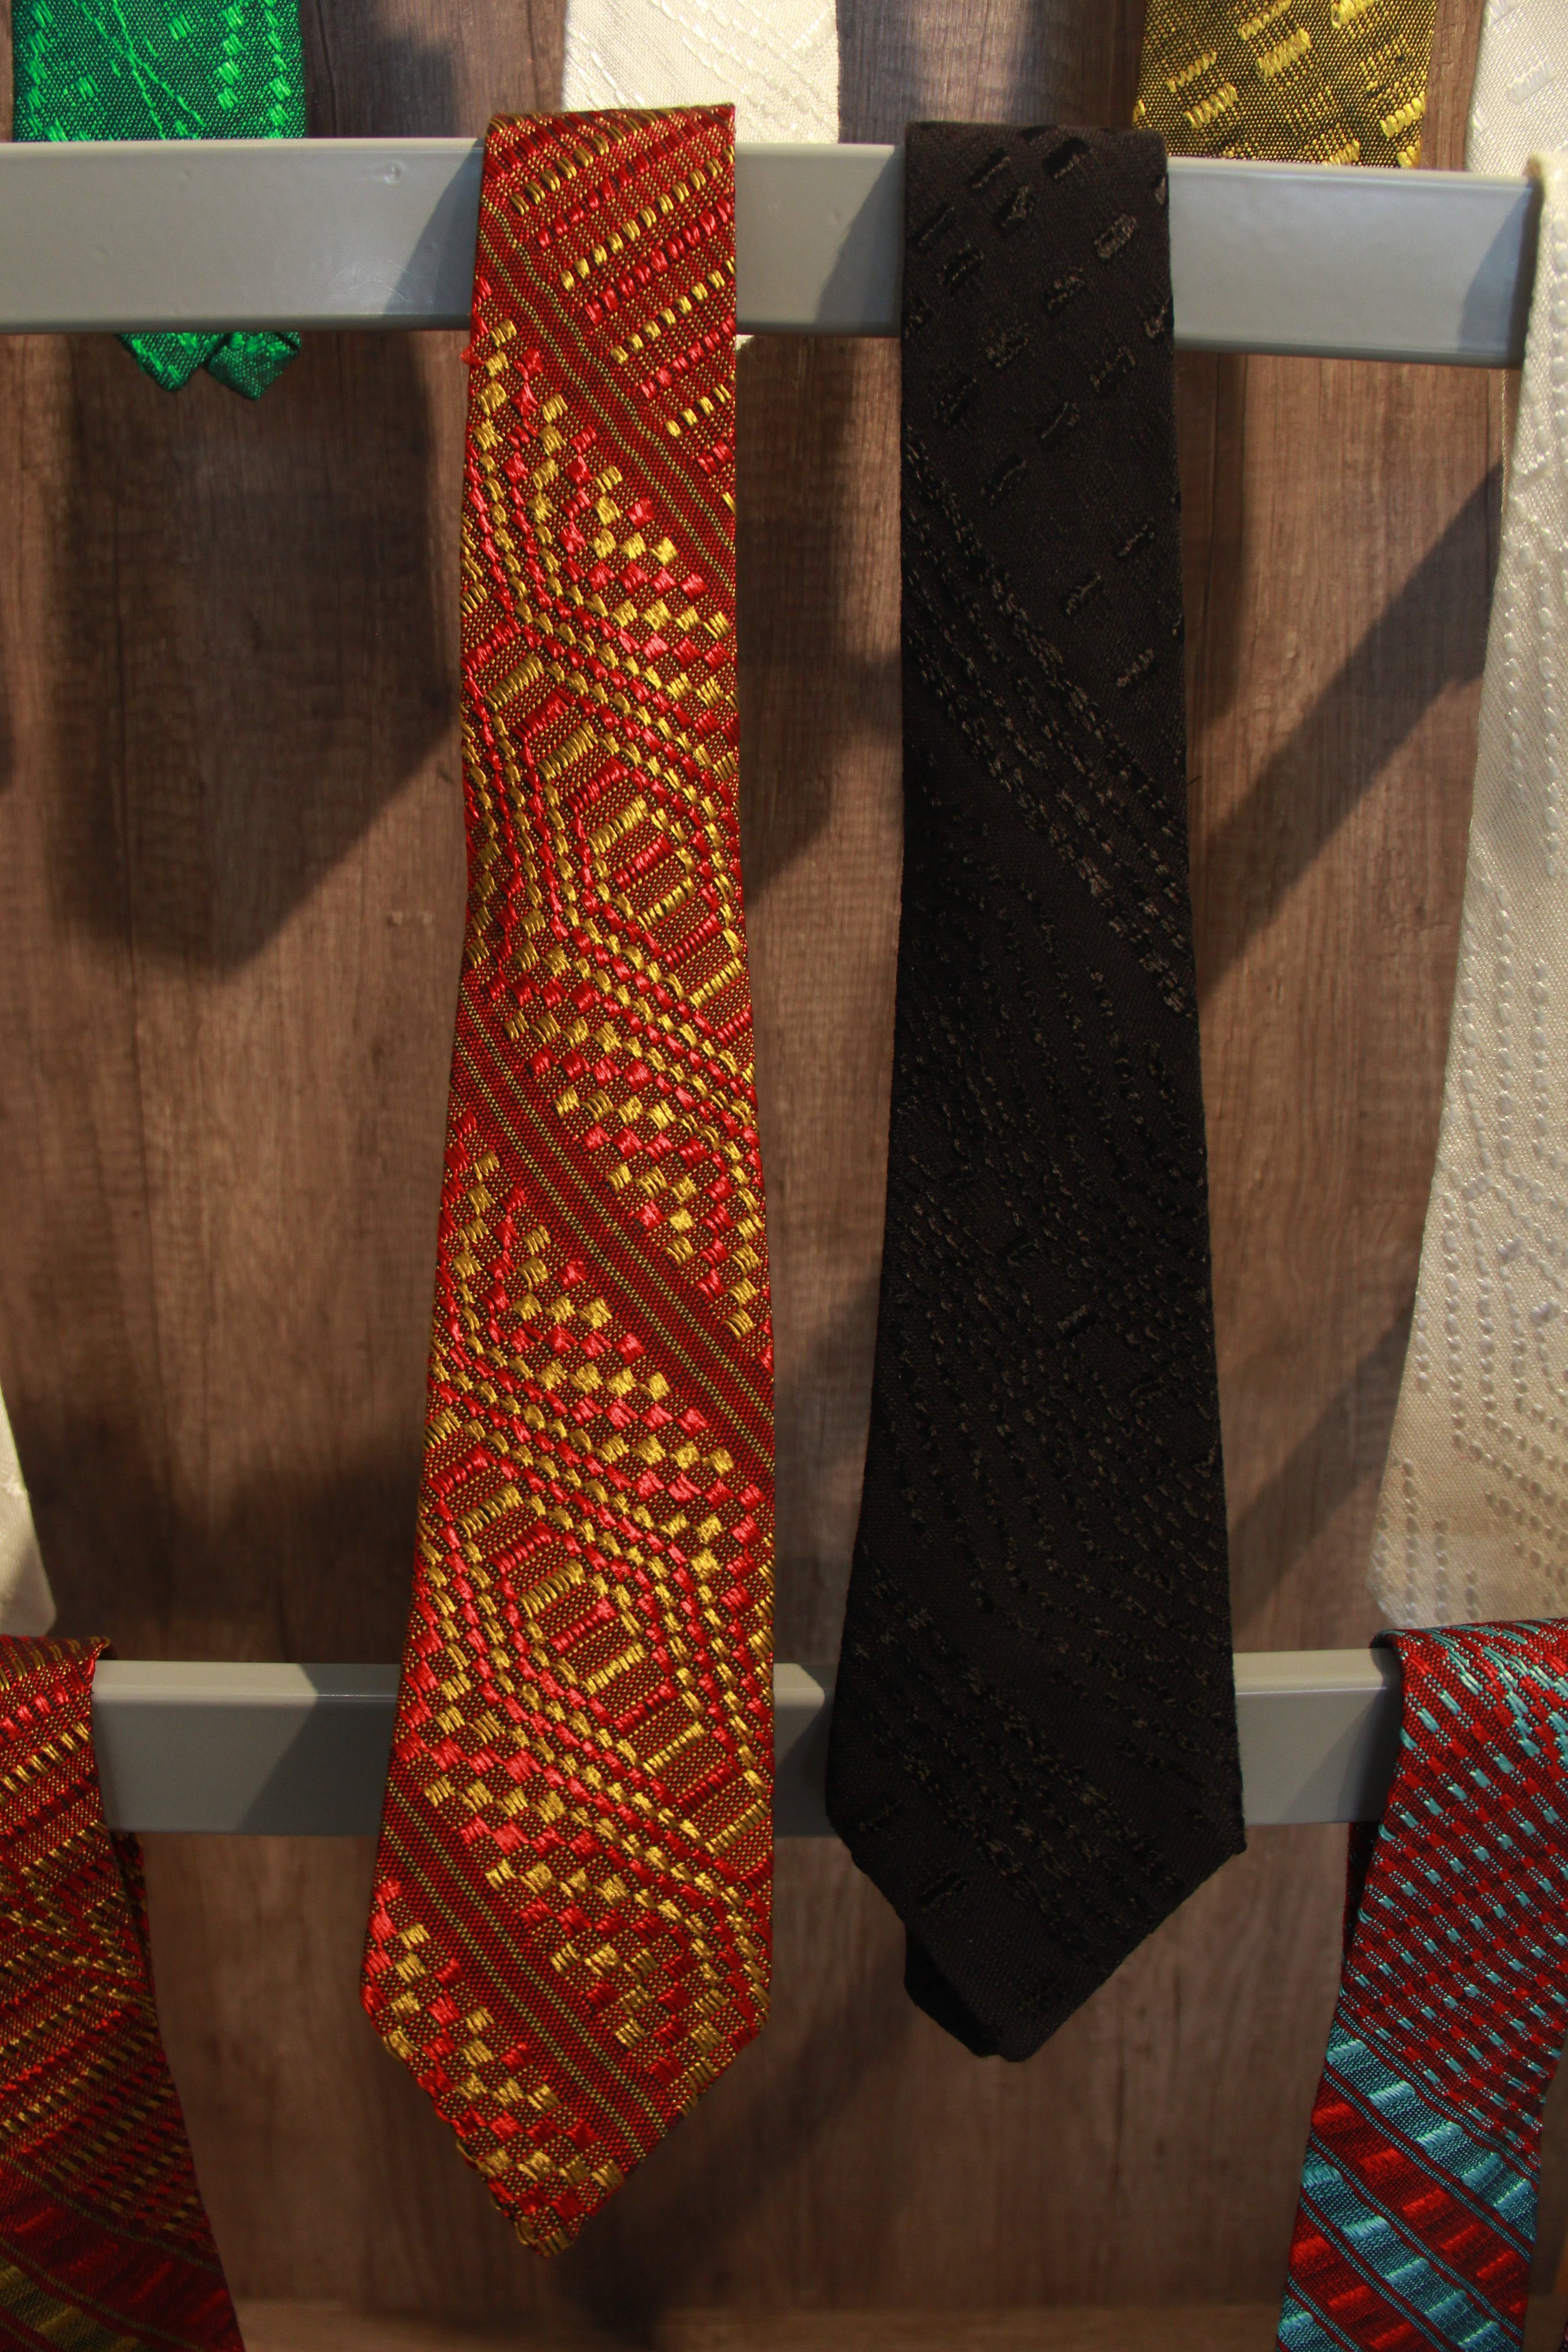 on Twitter: "El regalo ideal para Papá este mes es una corbata artesanal hecha en telar elaborada por artesanas de Comitán Domínguez. Contamos con 10 por ciento de